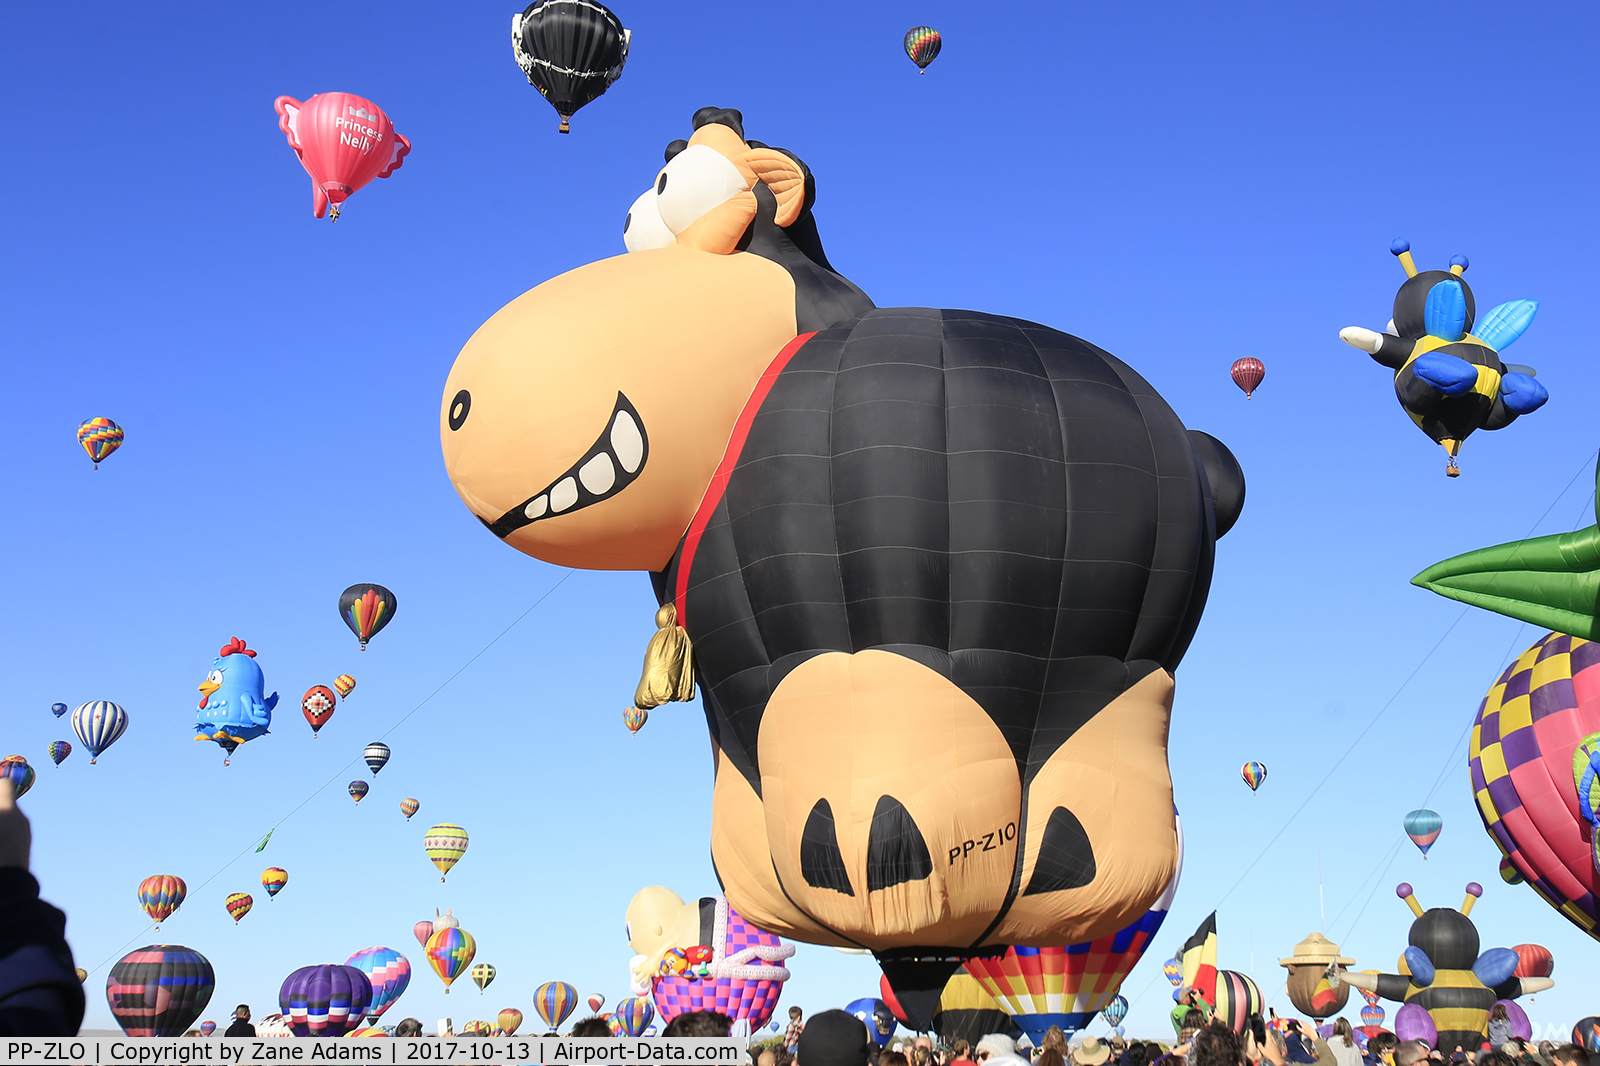 PP-ZLO, 2016 Libra Balloons Gator1 C/N 1234, At the 2017 Albuquerque Balloon Fiesta